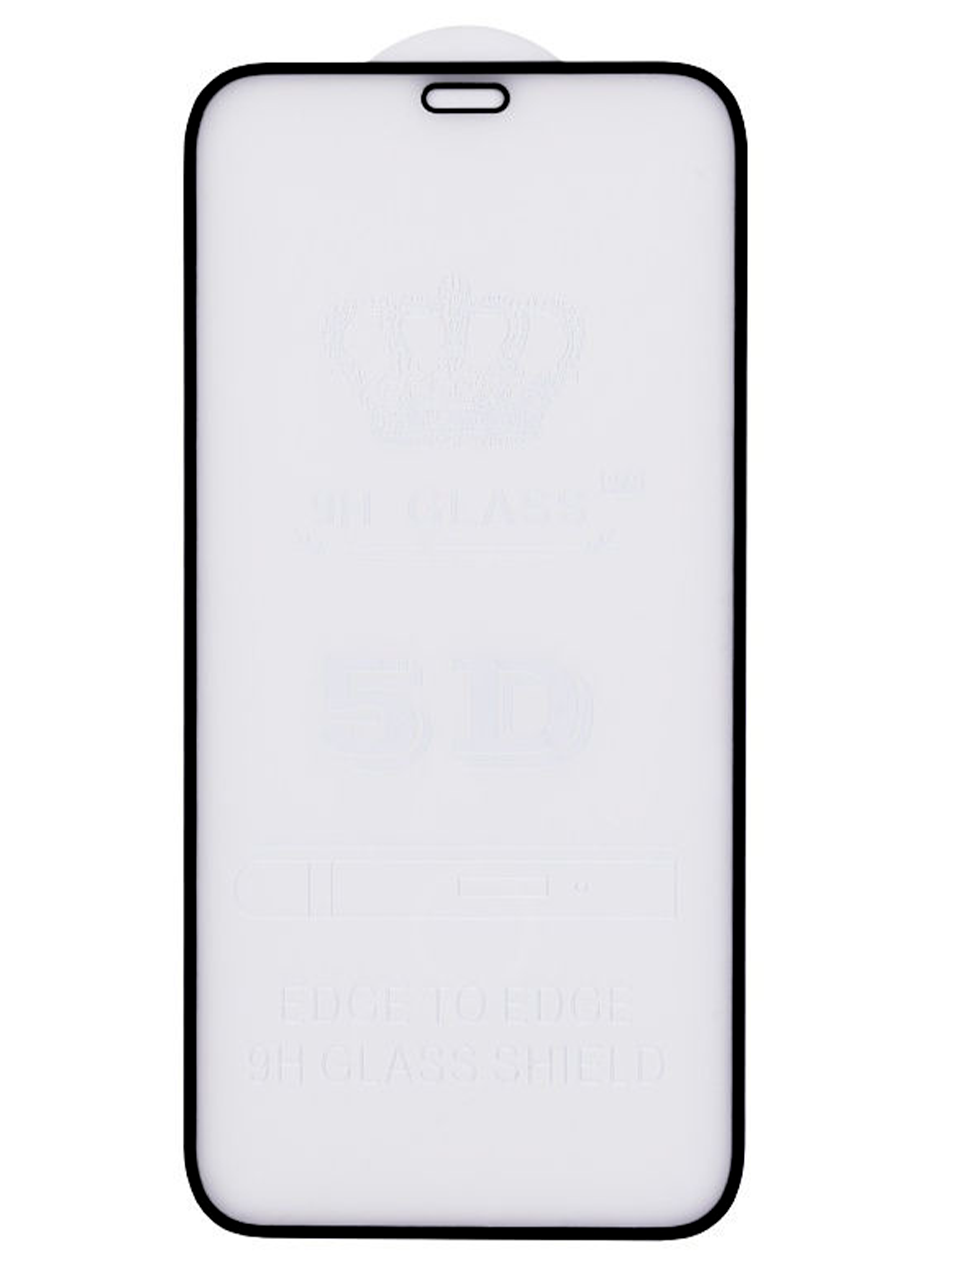 Защитное стекло для iPhone 14 Pro